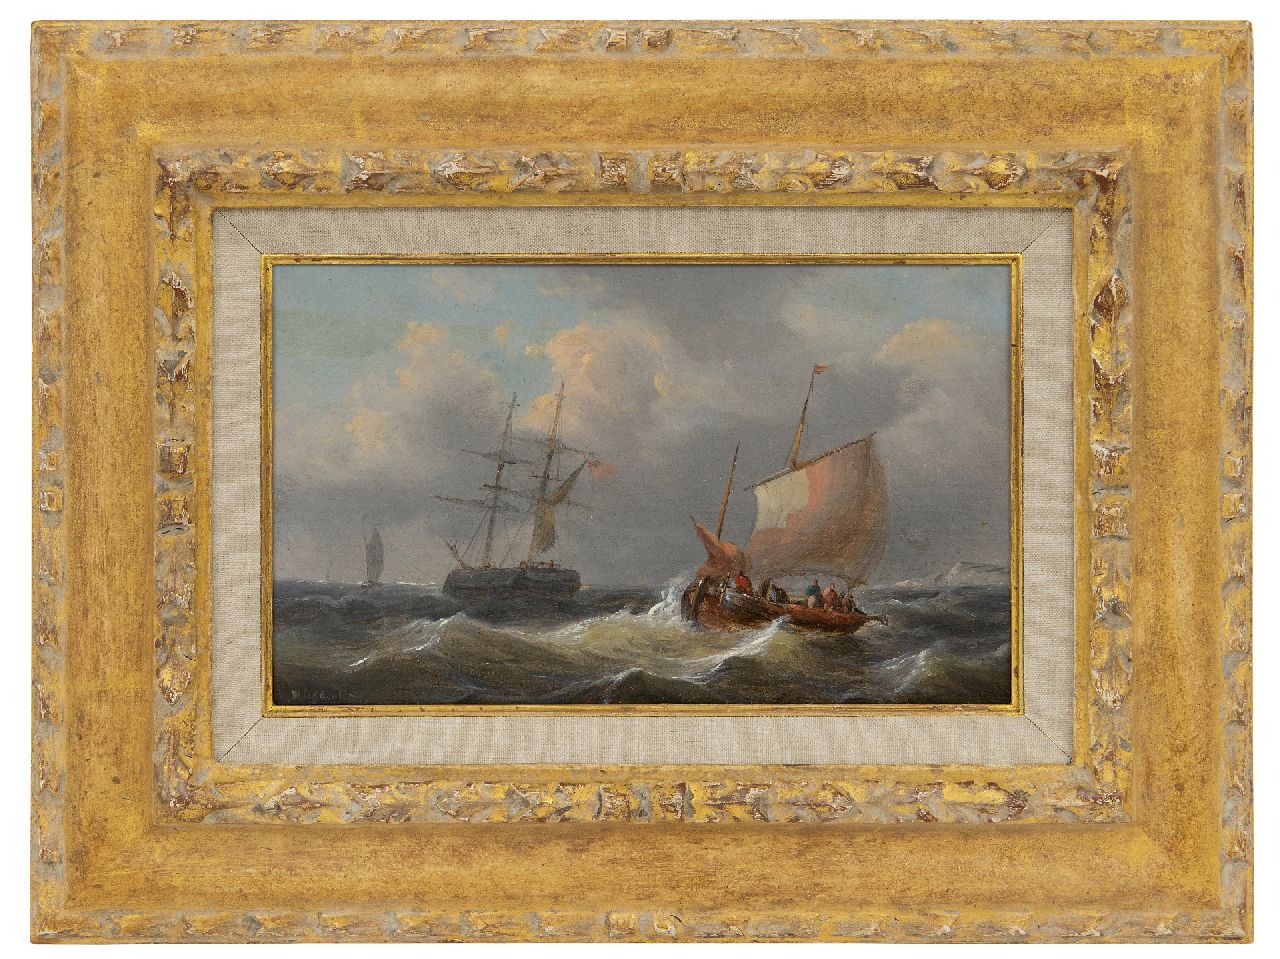 Opdenhoff G.W.  | Witzel 'George Willem' Opdenhoff | Schilderijen te koop aangeboden | Zeilschepen op ruwe zee, olieverf op paneel 14,6 x 23,4 cm, gesigneerd linksonder